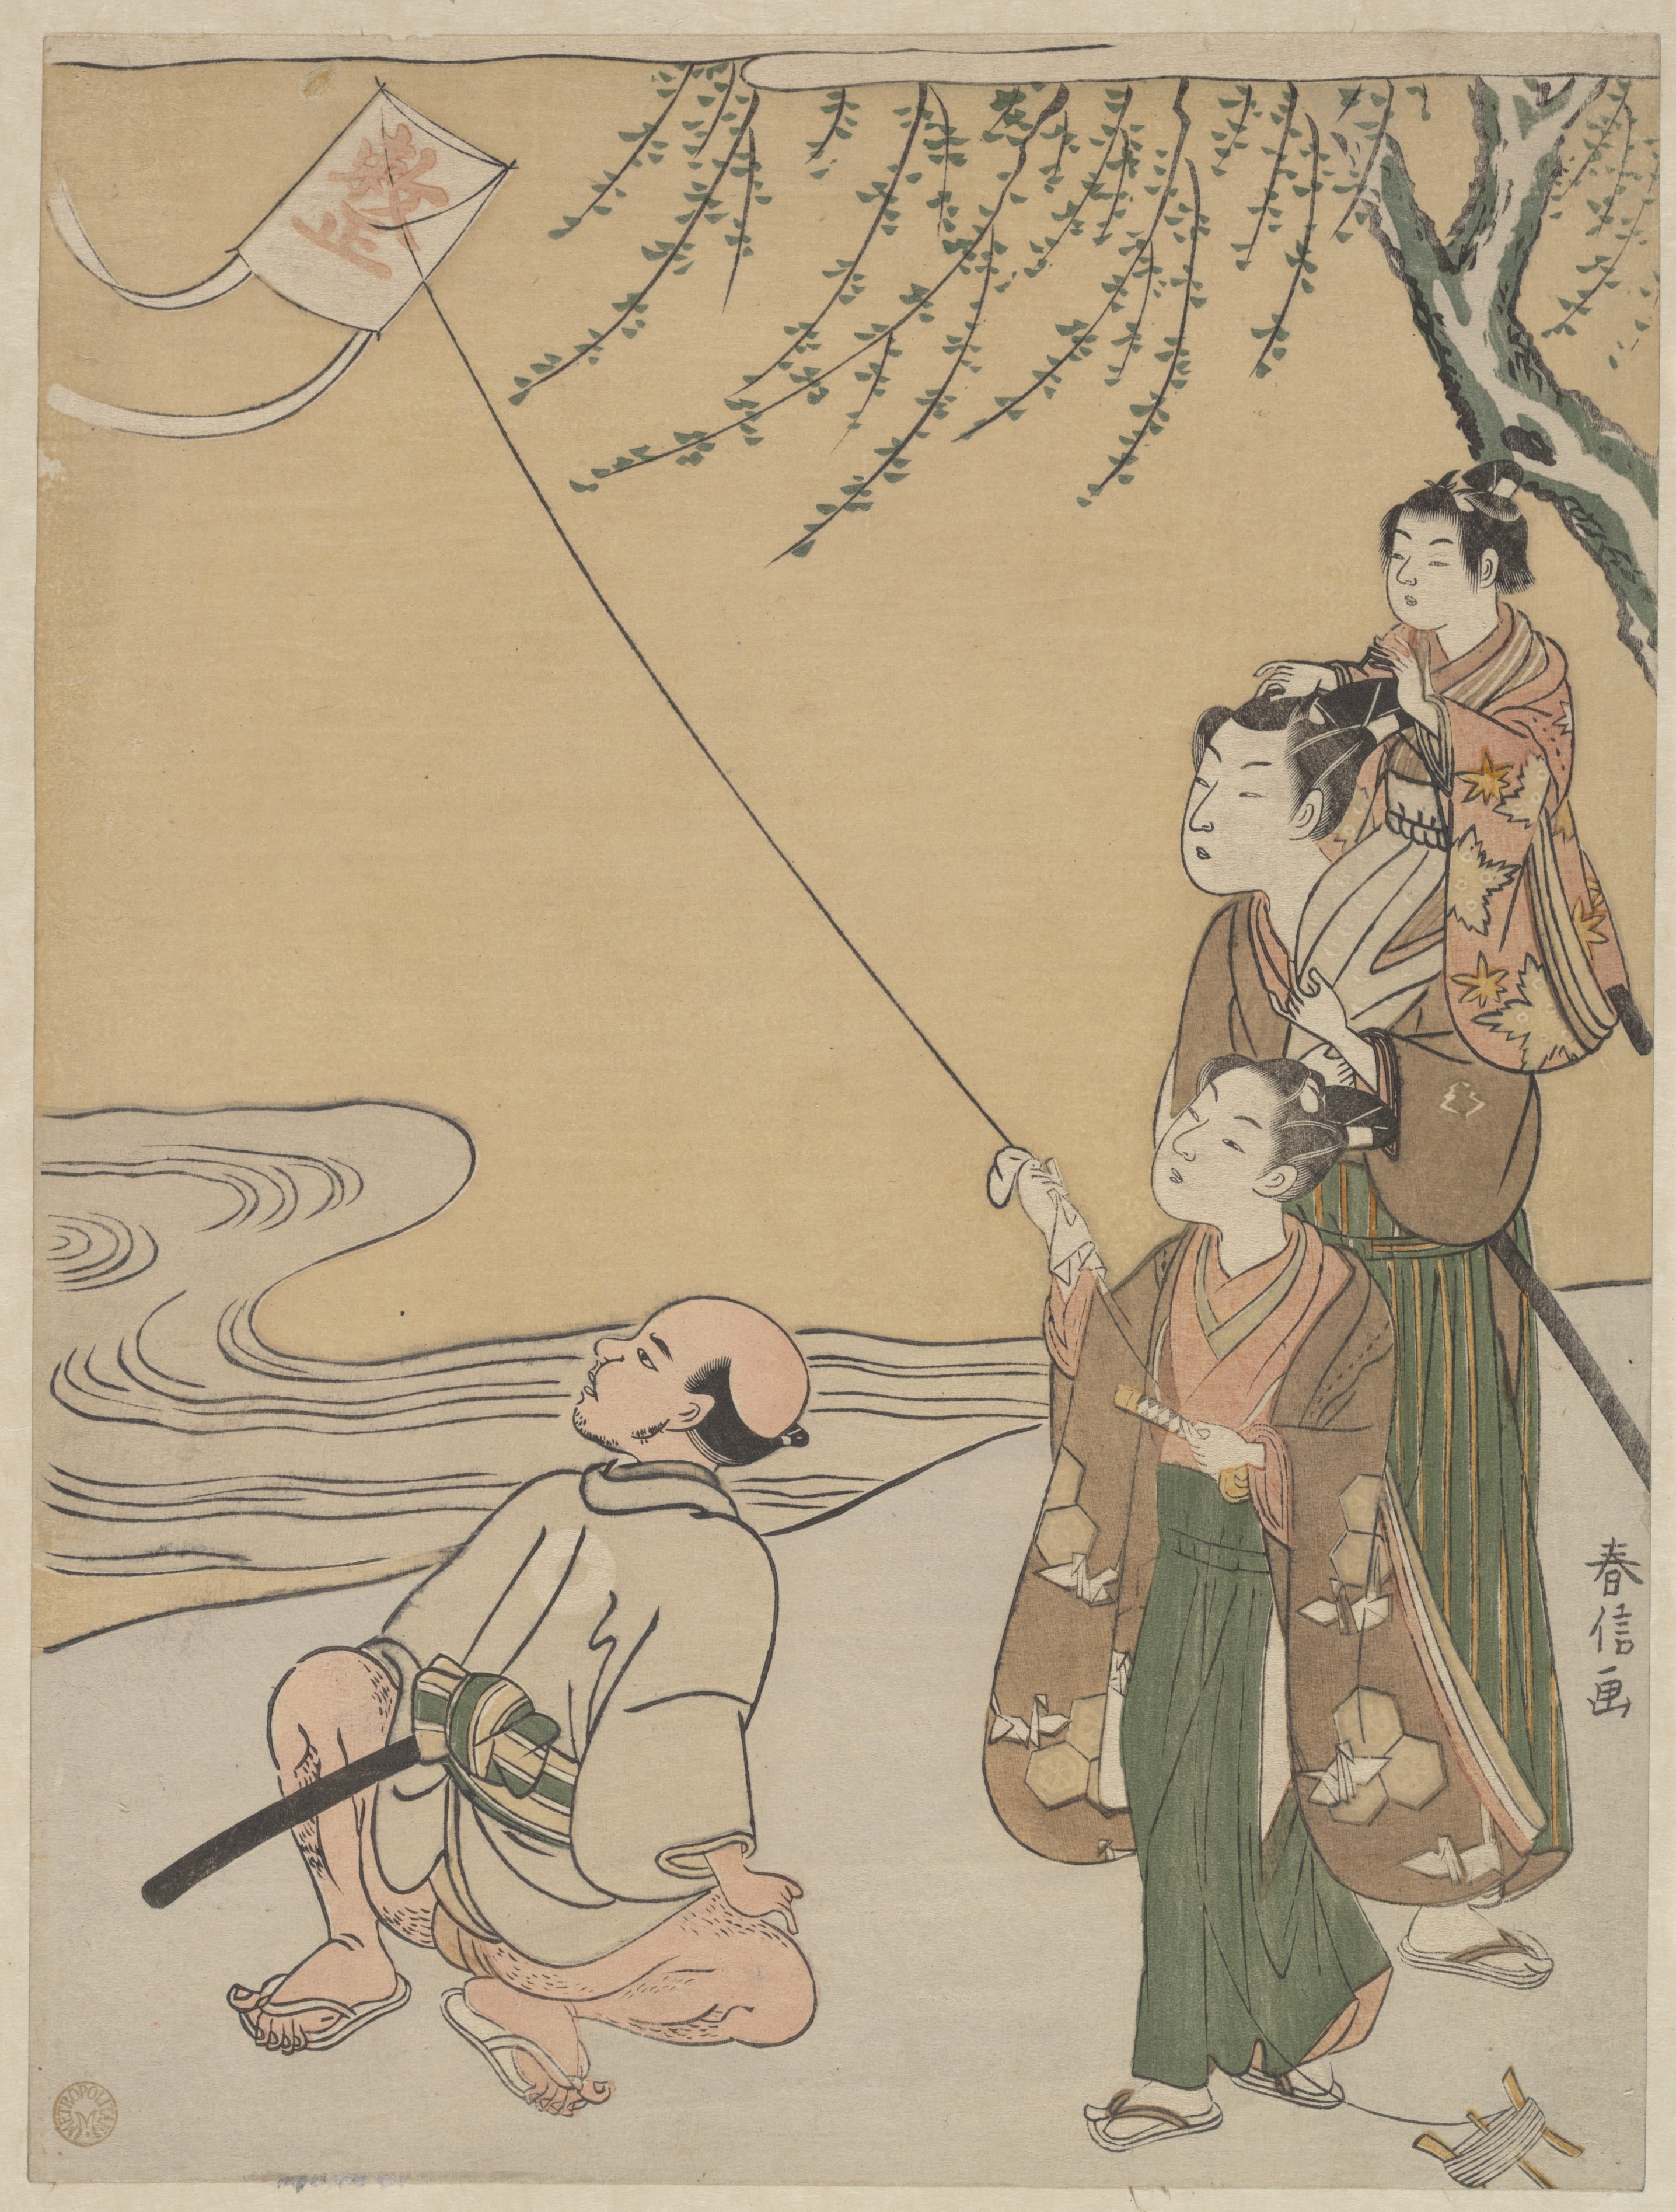 Drachensteigen by Suzuki Harunobu - 1766 - 27,3 x 20,6 cm Metropolitan Museum of Art